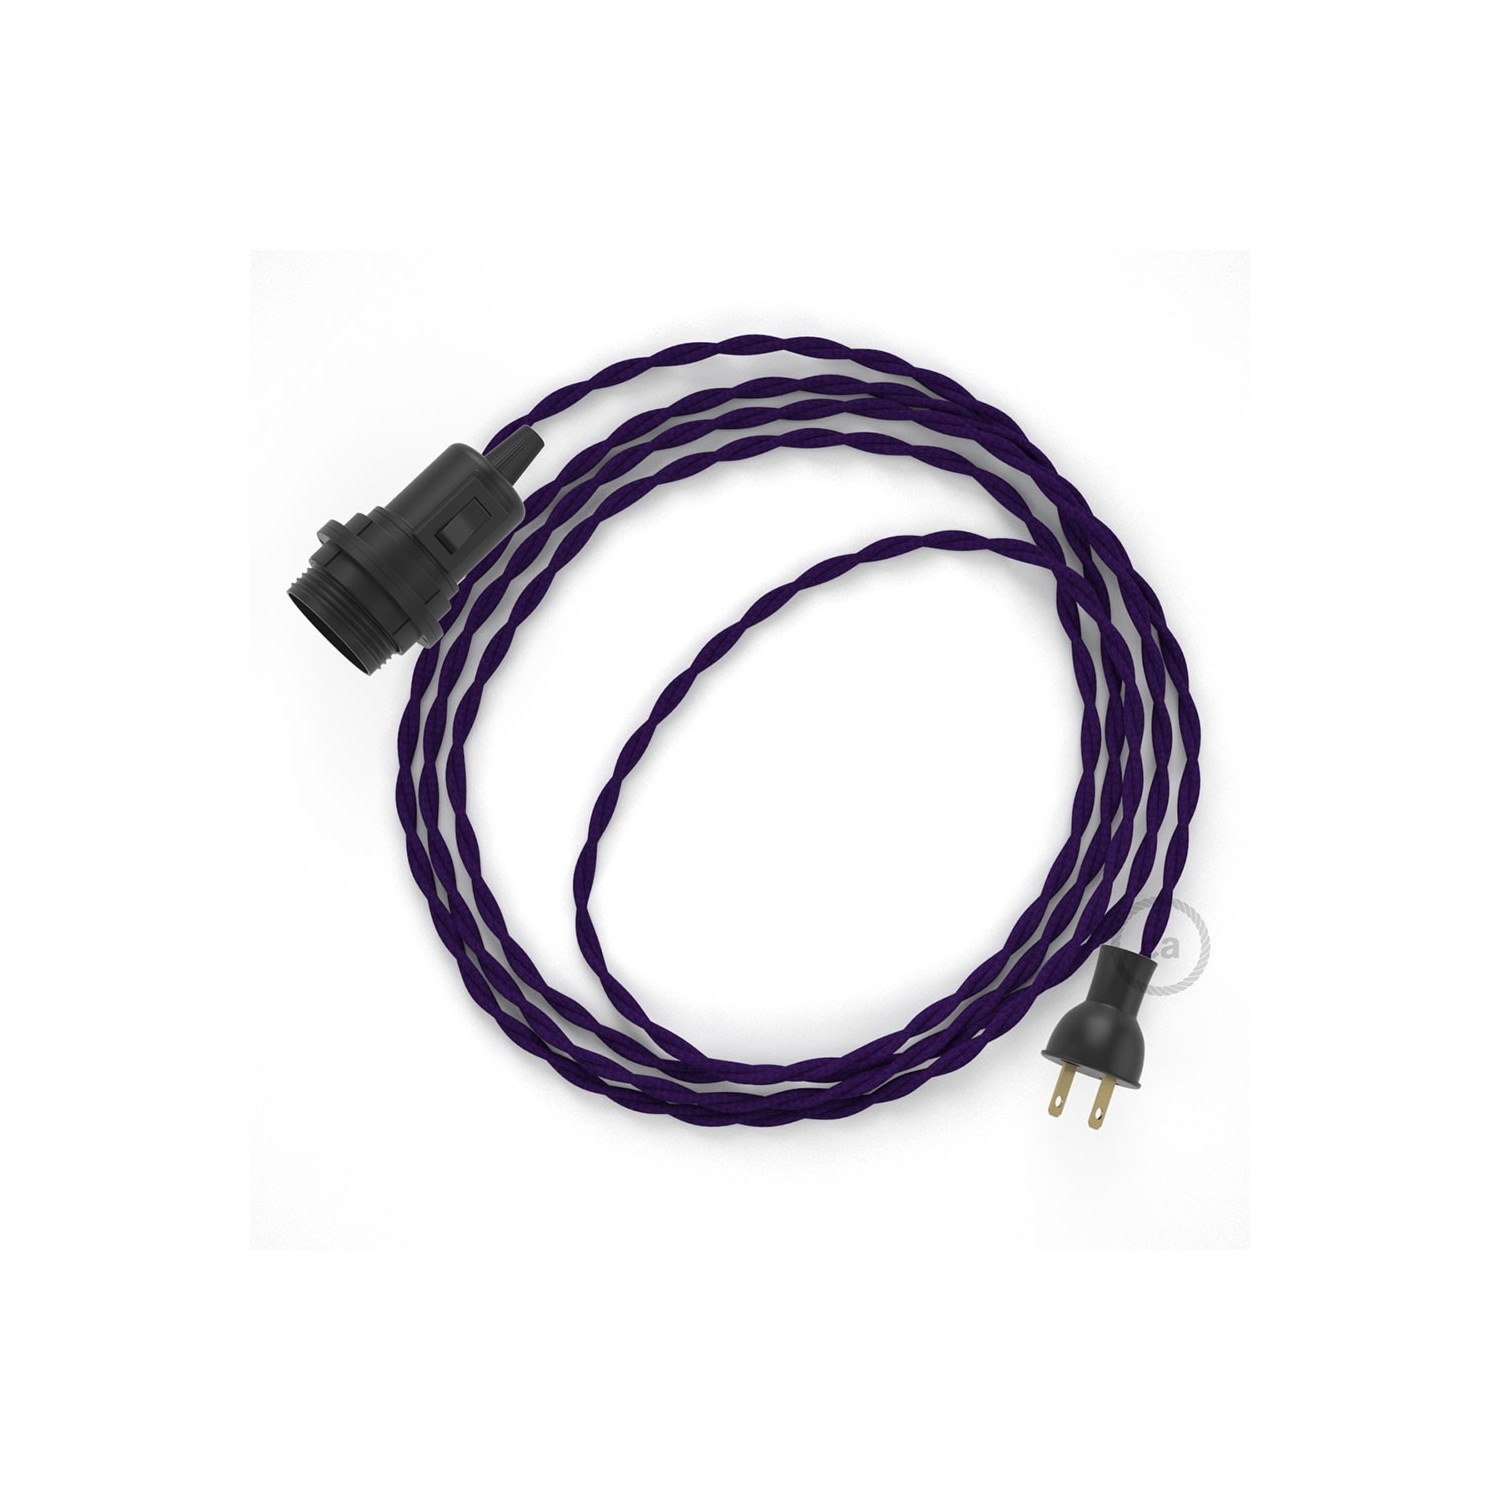 Crea tu Snake para pantalla con cable de Rayón Púrpura TM14, socket y enchufe, y trae la luz donde tu quieras.